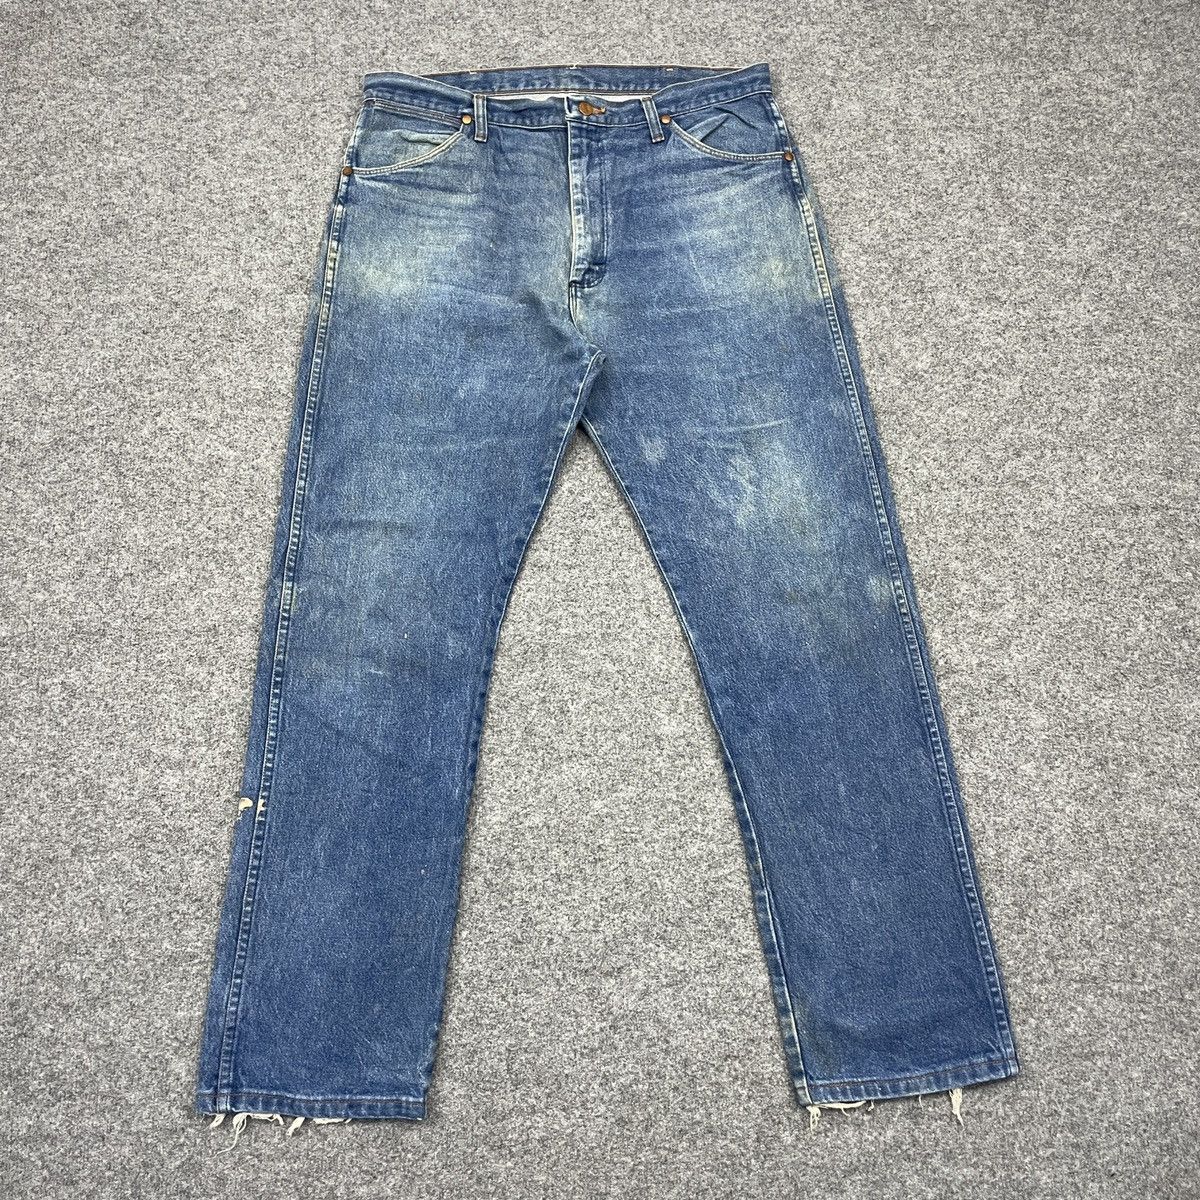 Vintage Vintage Wrangler Faded Blue Jeans -wc 219 | Grailed